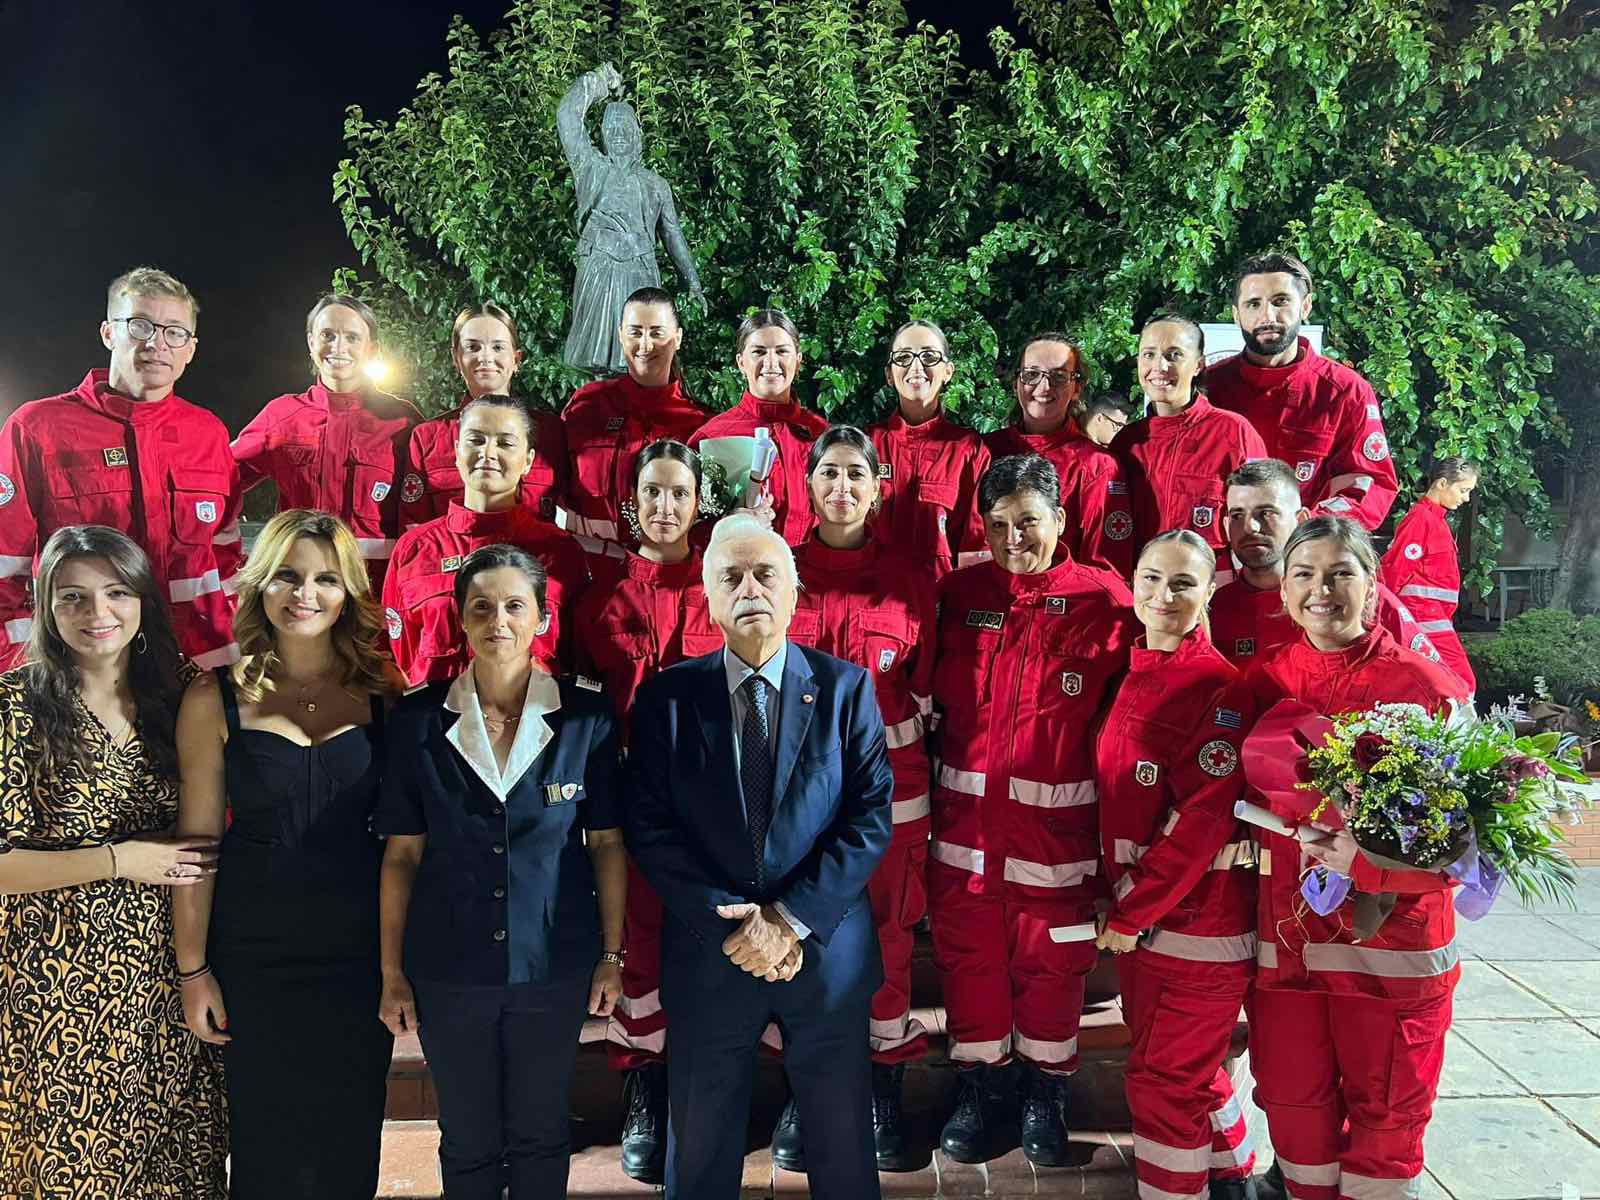 Ελληνικός Ερυθρός Σταυρός: Εντυπωσιακή η παρουσία του κόσμου στα εγκαίνια του νέου χώρου του Περιφερειακού Τμήματος Ελασσόνας του Ελληνικού Ερυθρού Σταυρού